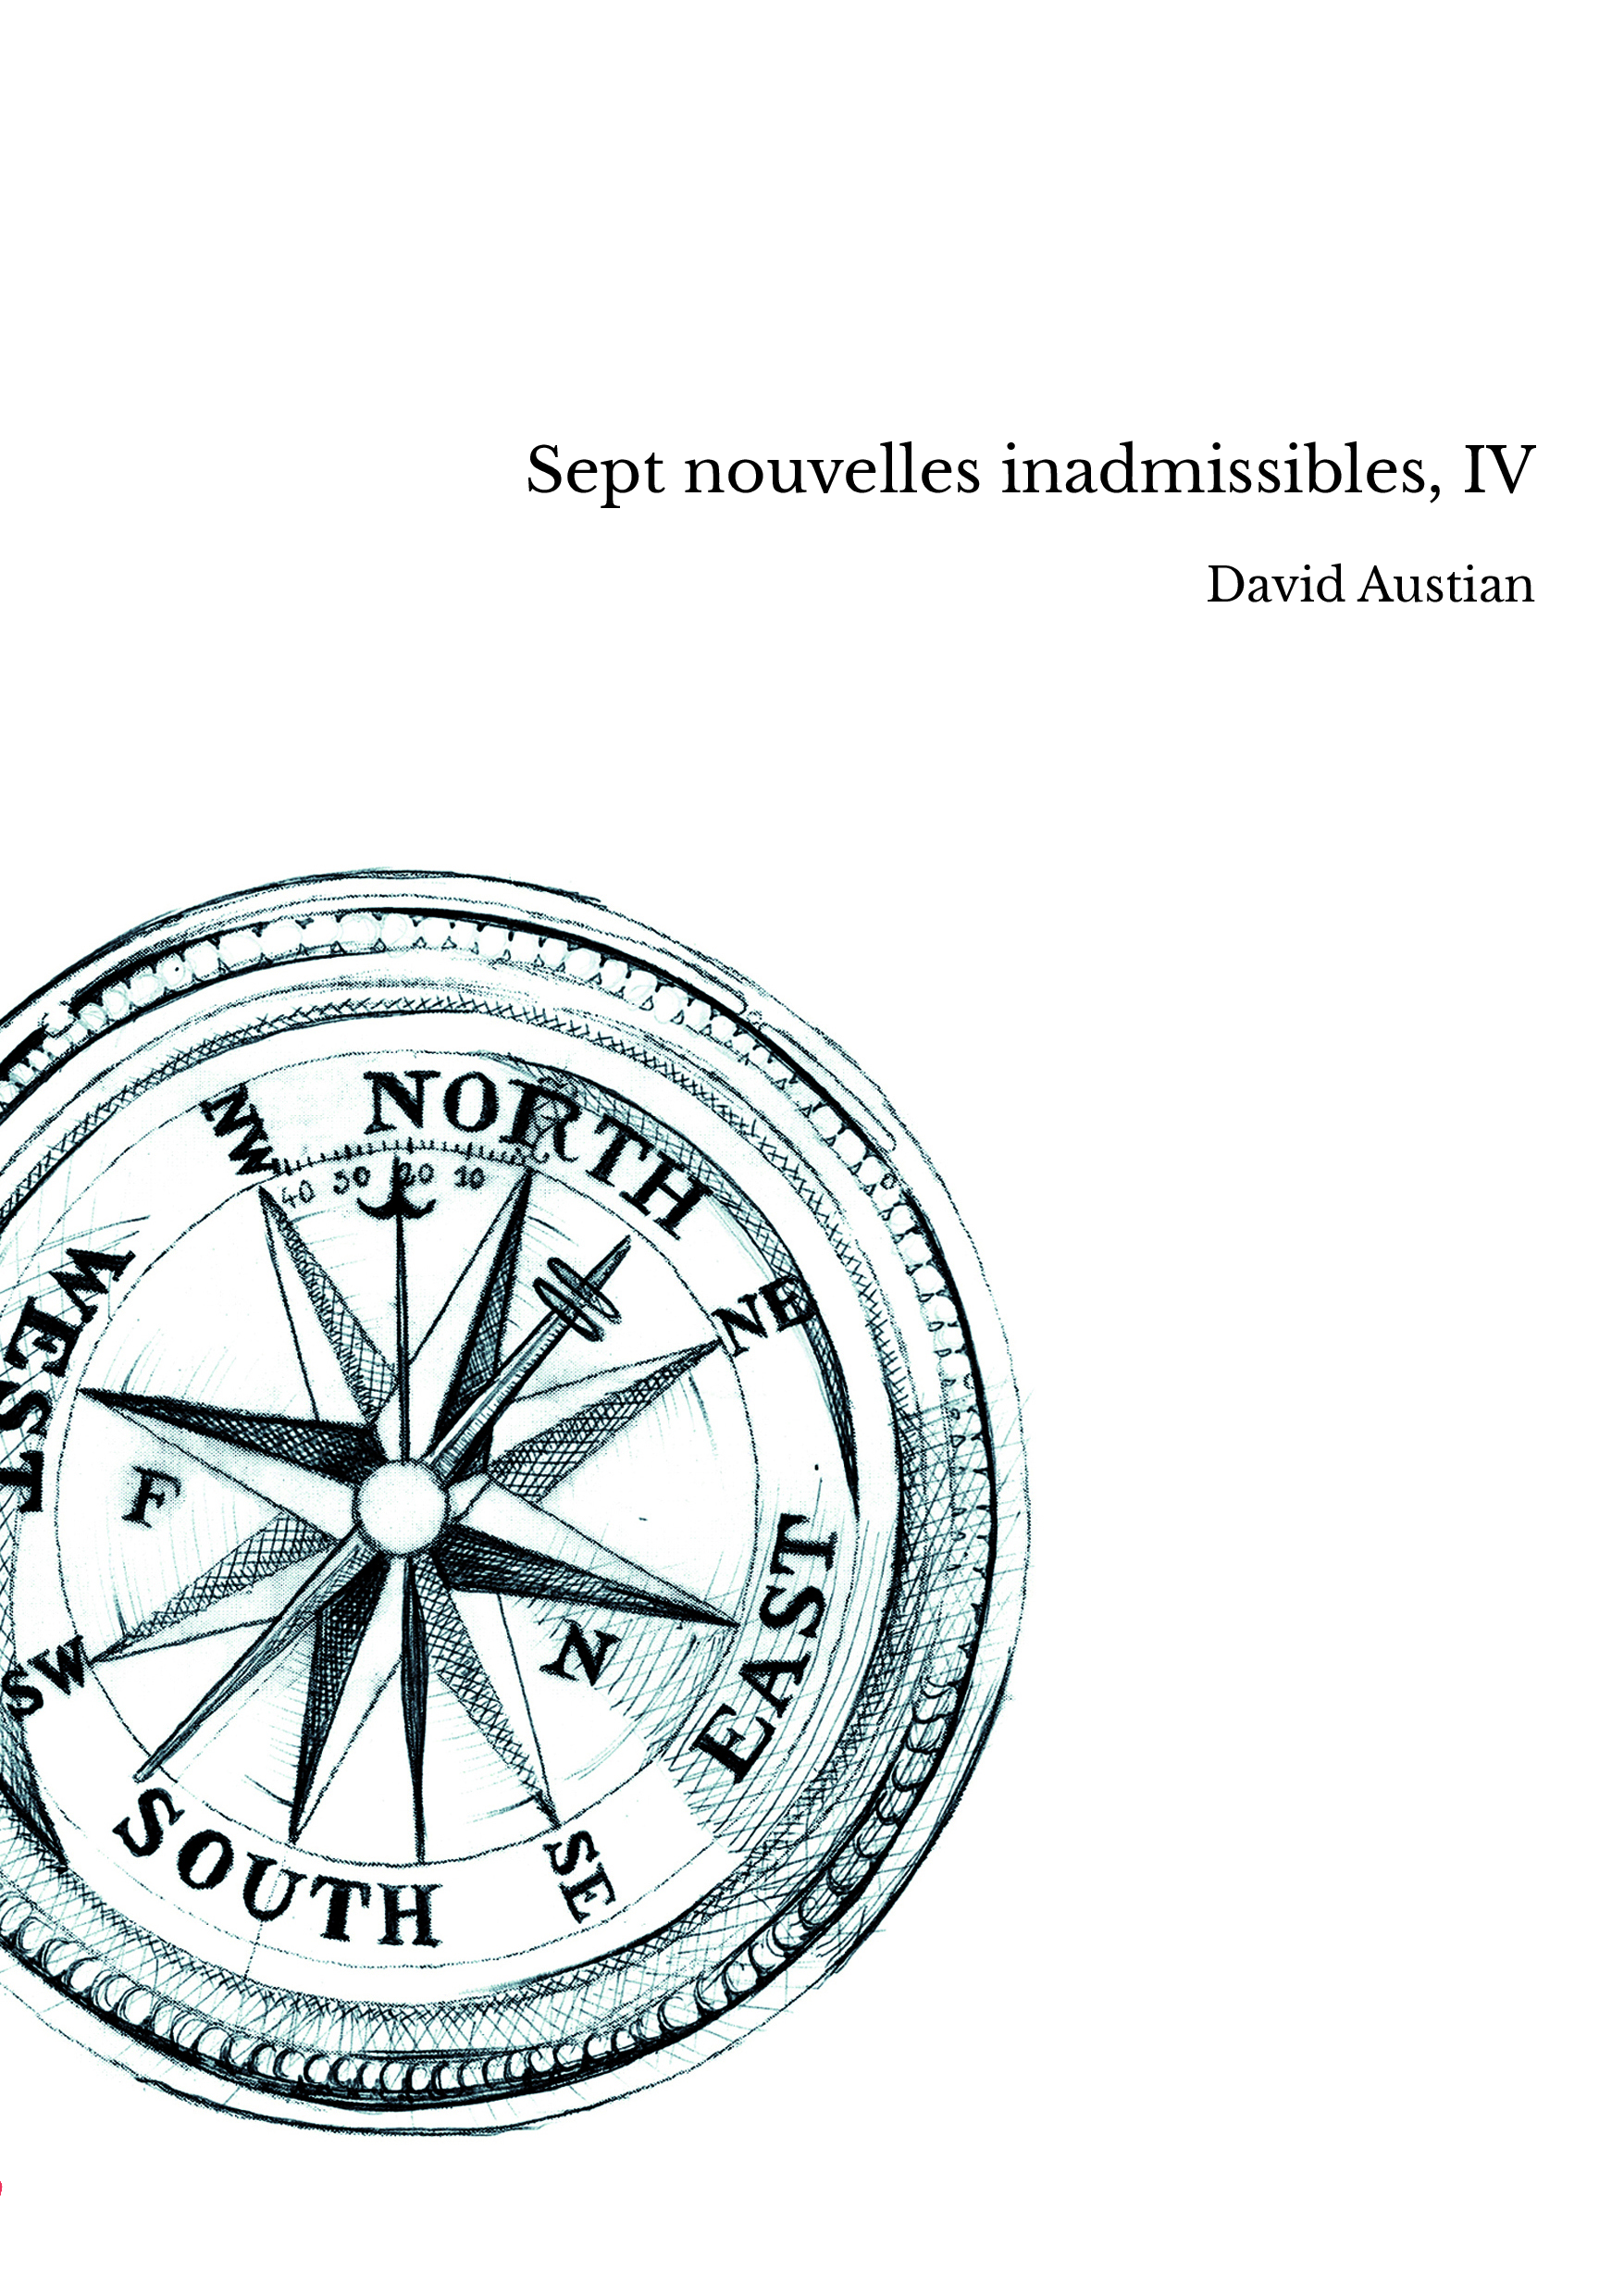 Sept nouvelles inadmissibles, IV